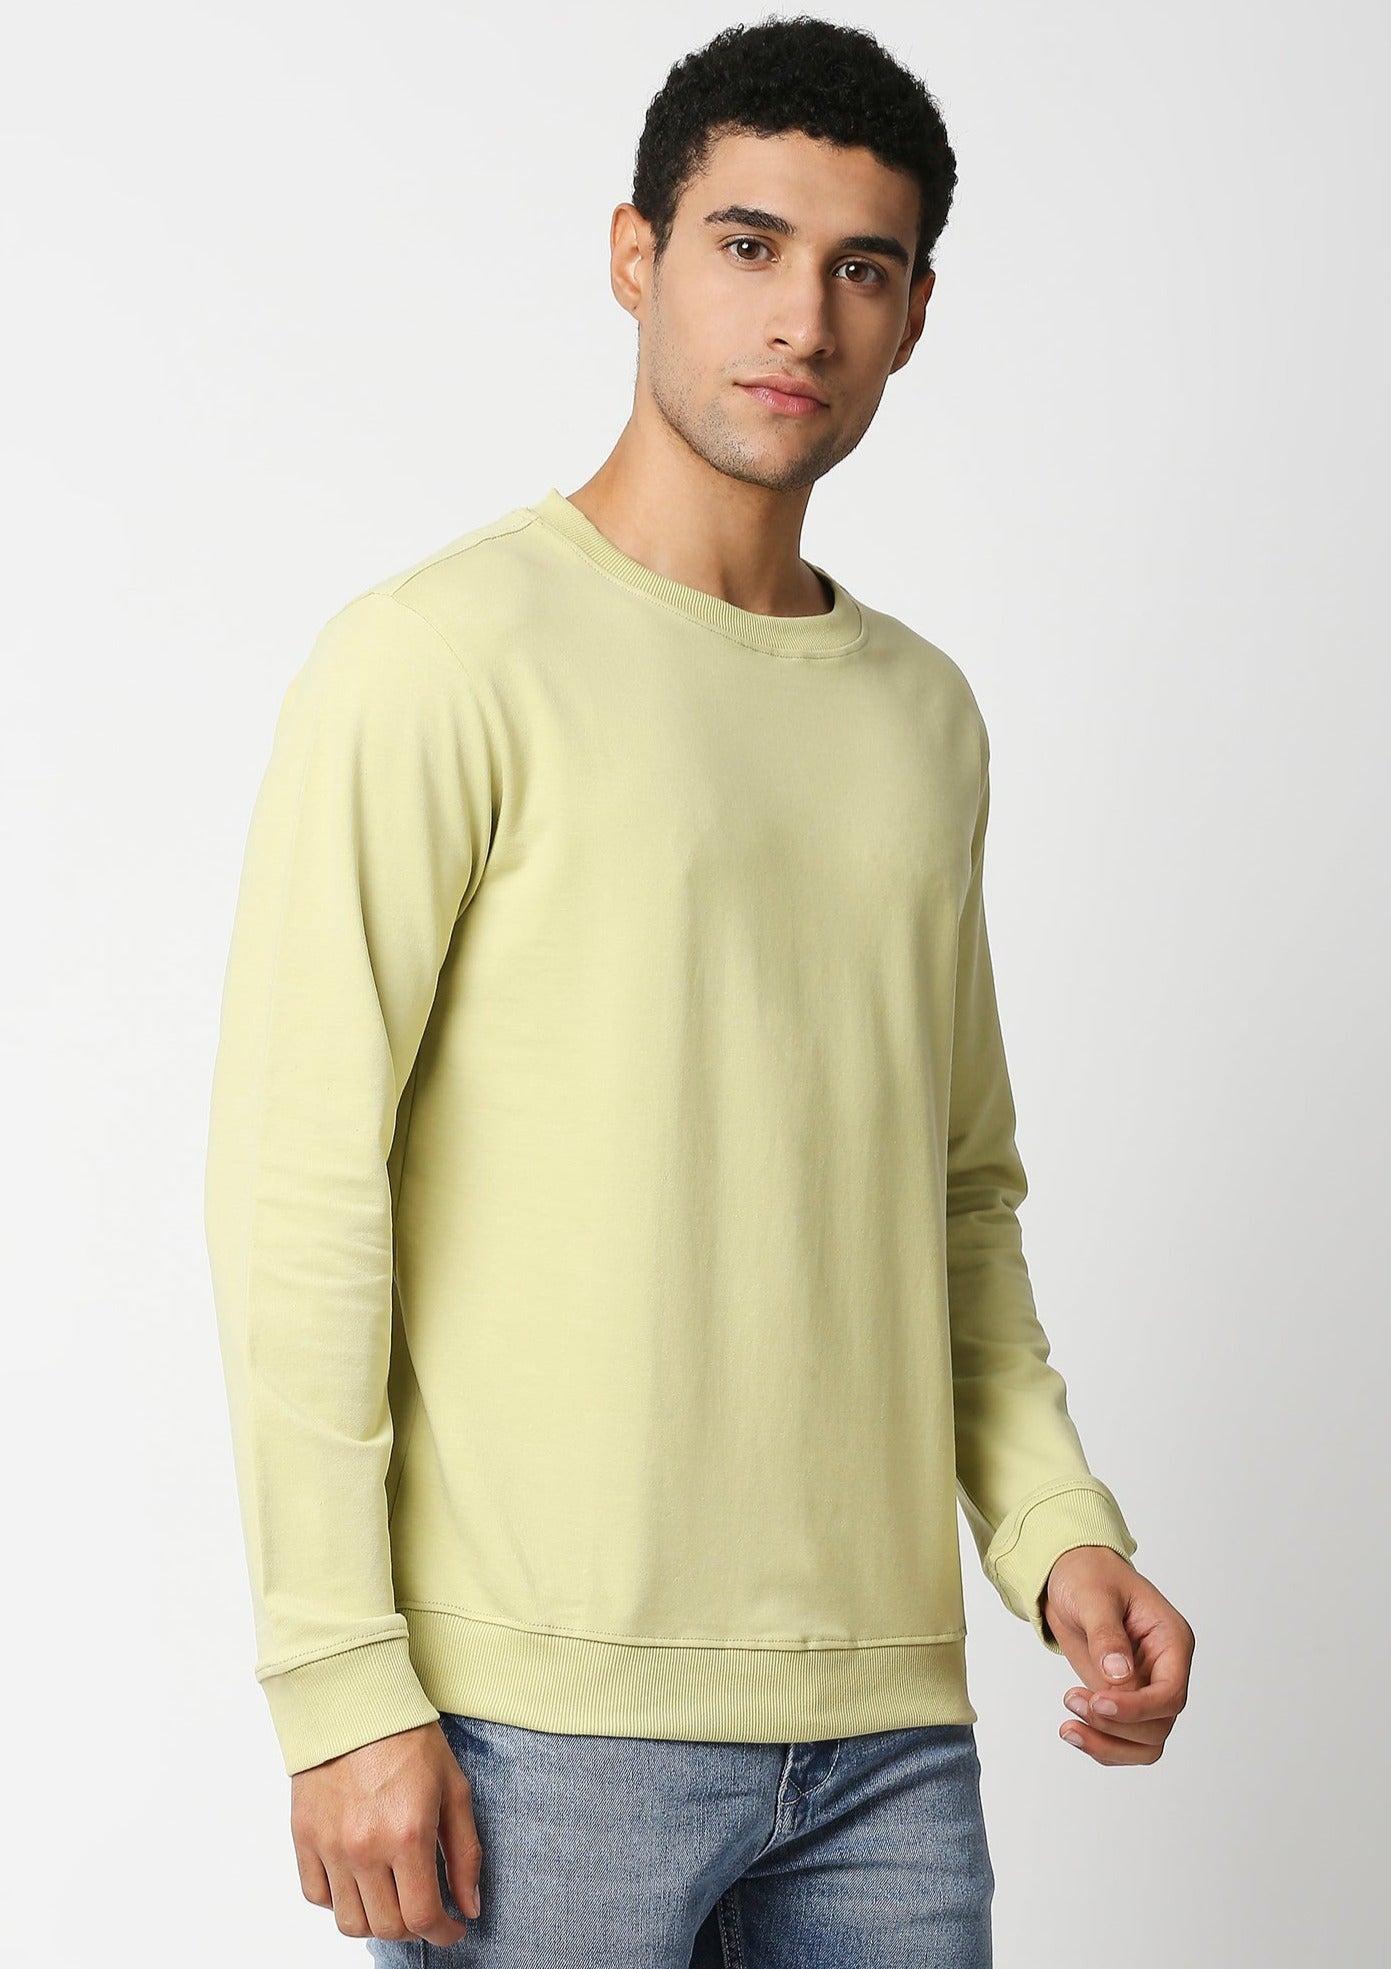 Fostino Vintage Lemon Yellow Plain Full Sleeves Tshirt - Fostino Shirts & Tops